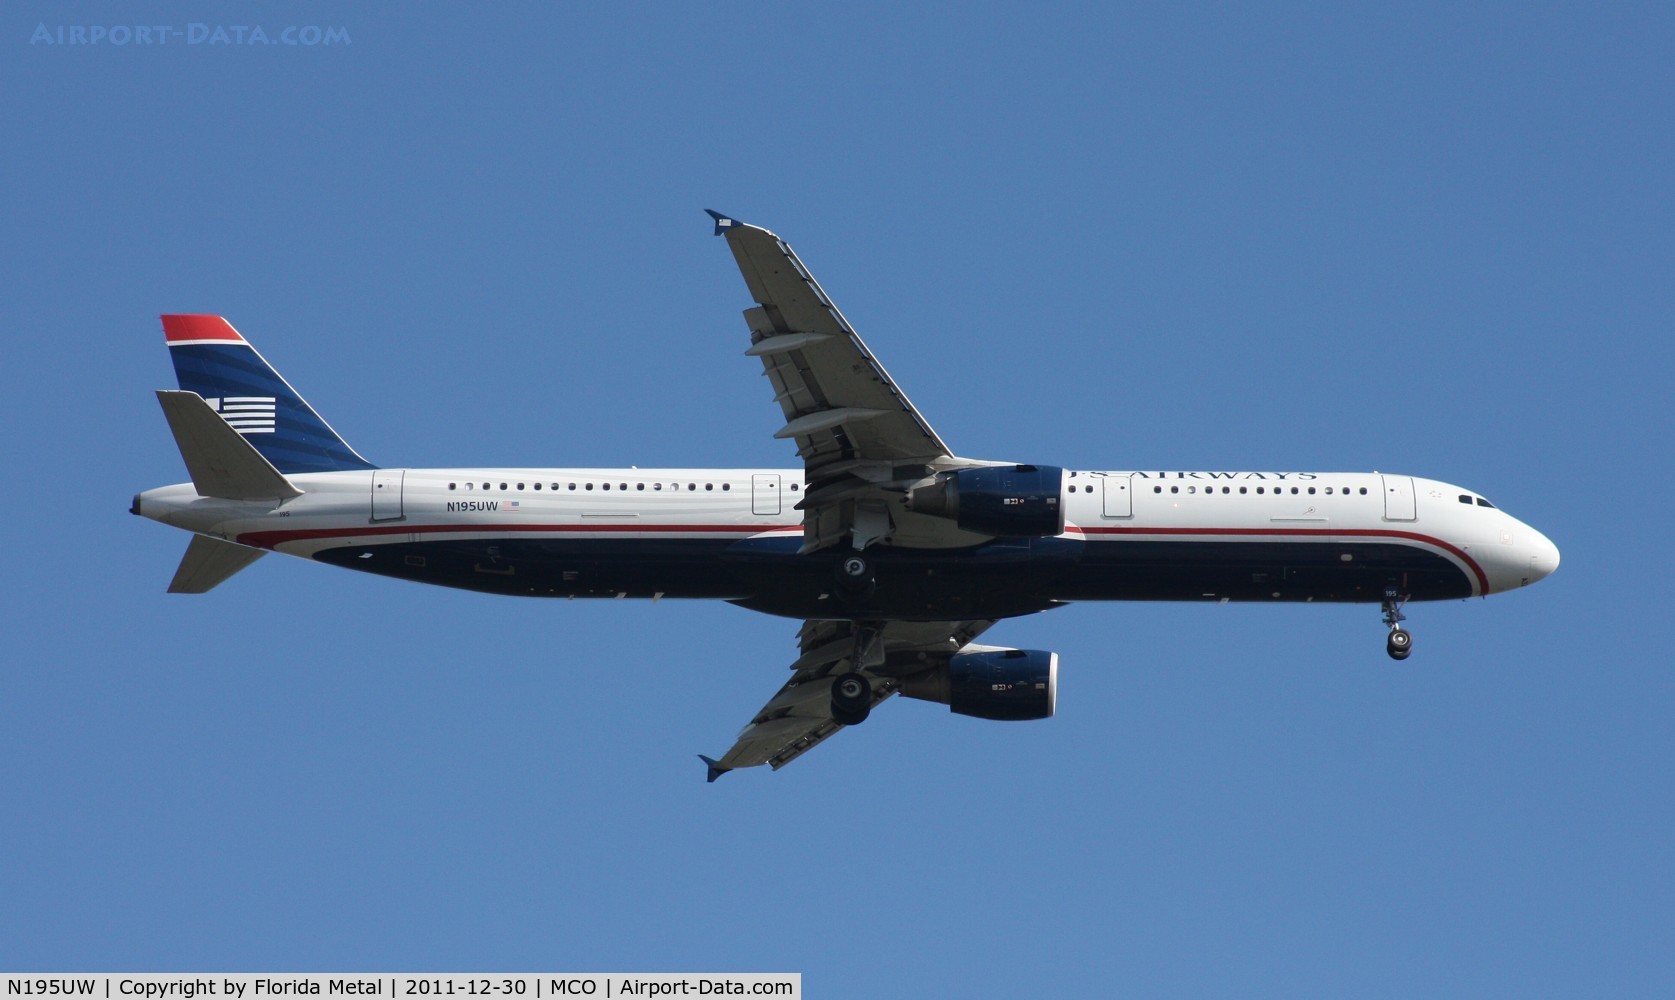 N195UW, 2008 Airbus A321-211 C/N 3633, US Airways A321